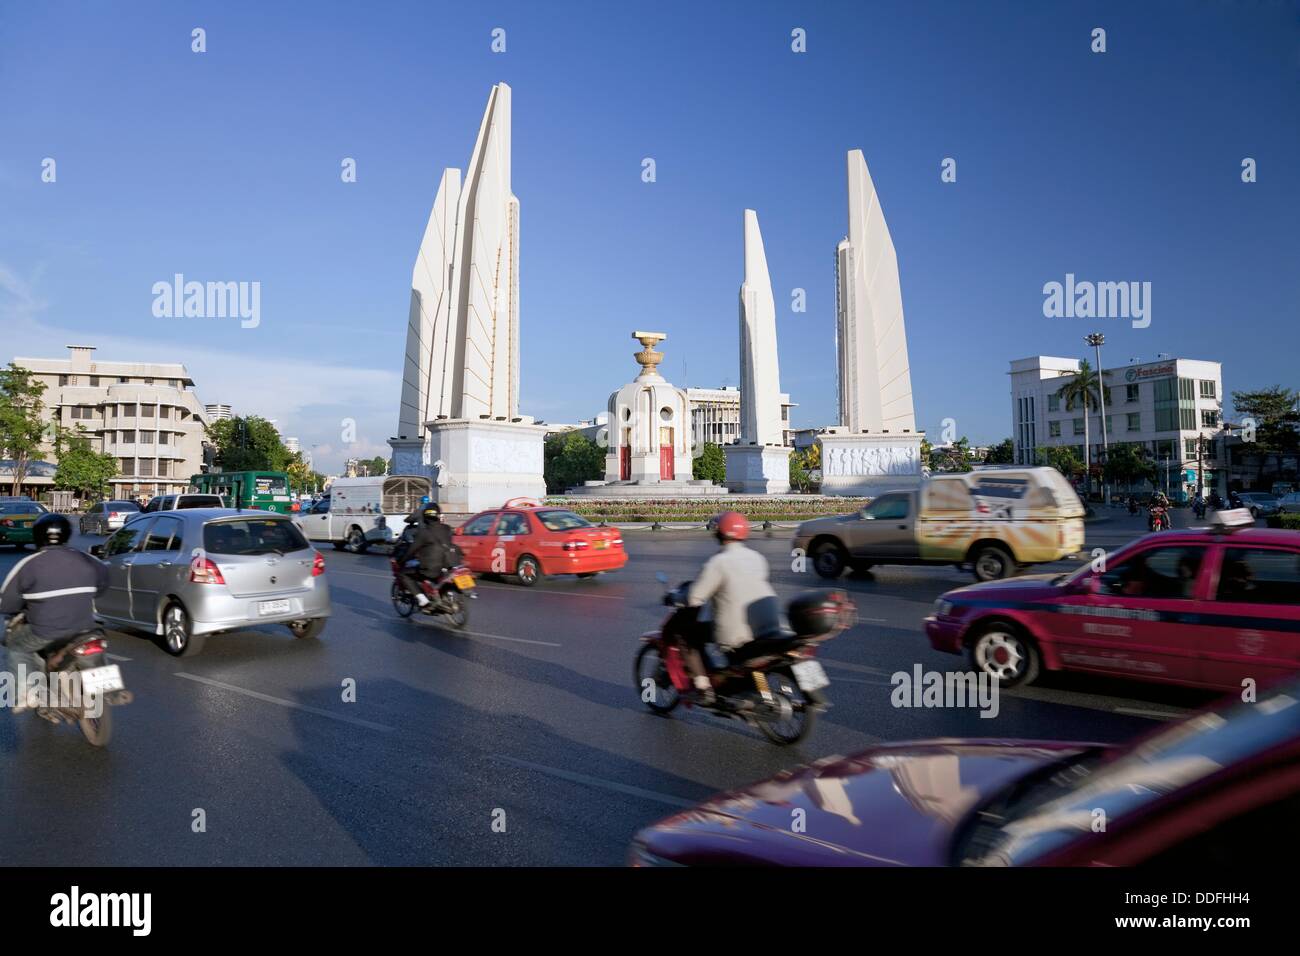 Le Monument de la démocratie, Banglamphu, Bangkok, Thaïlande Banque D'Images